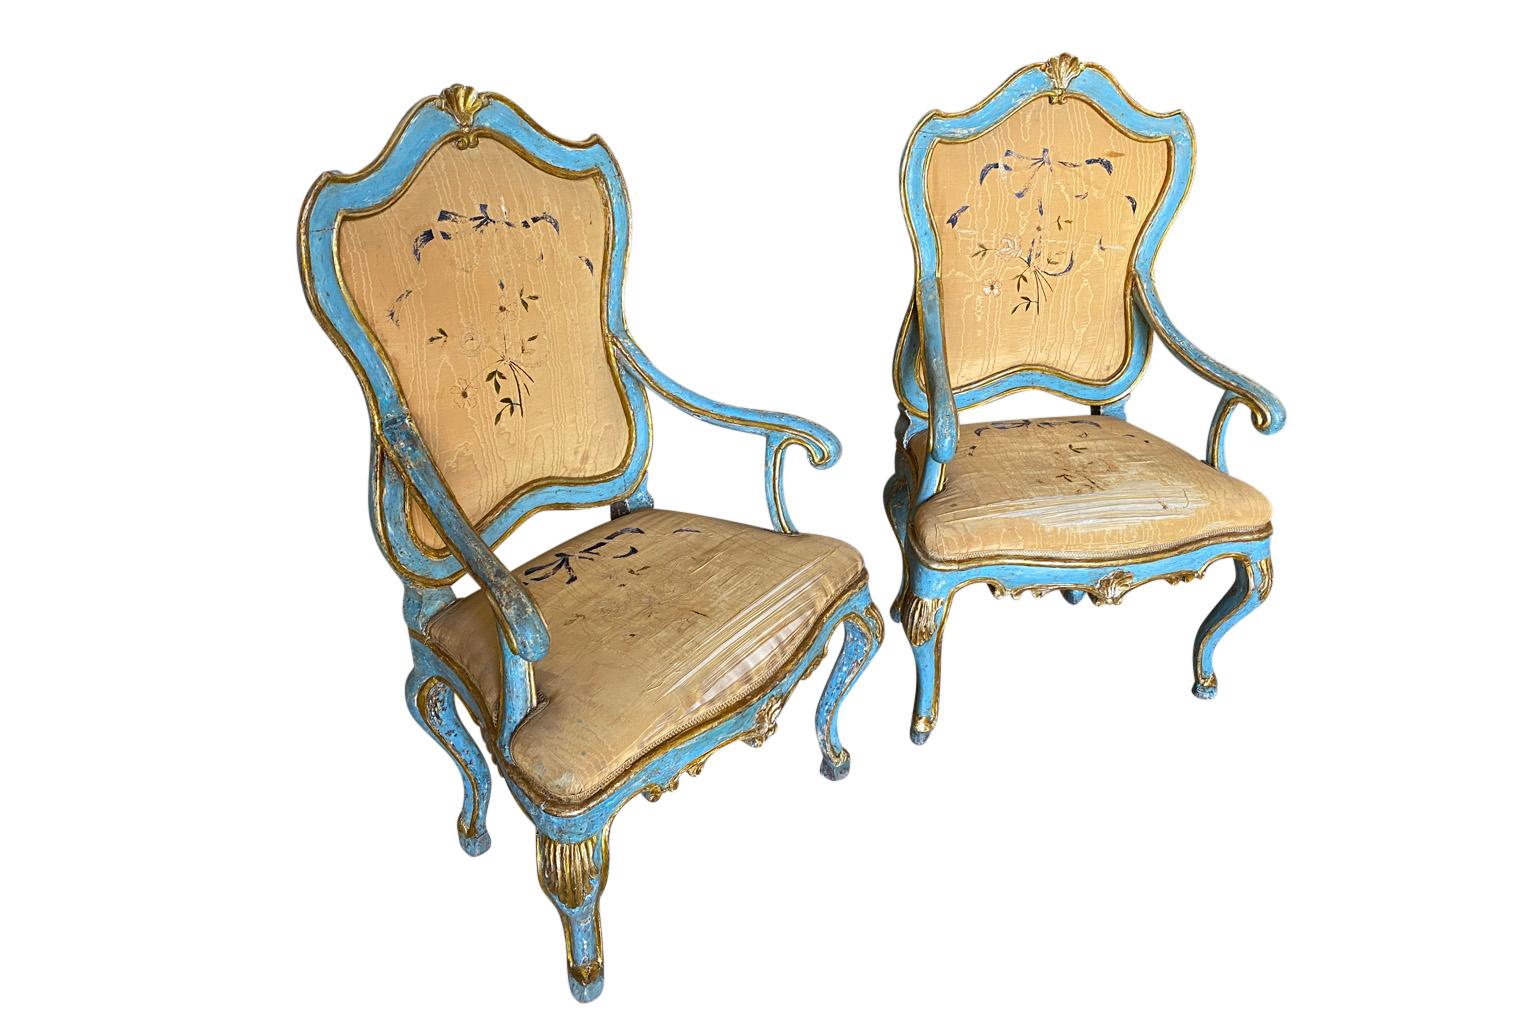 Une paire exceptionnelle et très élégante de fauteuils vénitiens de la période Régence. Magnifiquement construit en bois peint et doré, avec des couleurs étonnantes et un rembourrage en soie d'origine. Magnifiques chaises d'appoint.